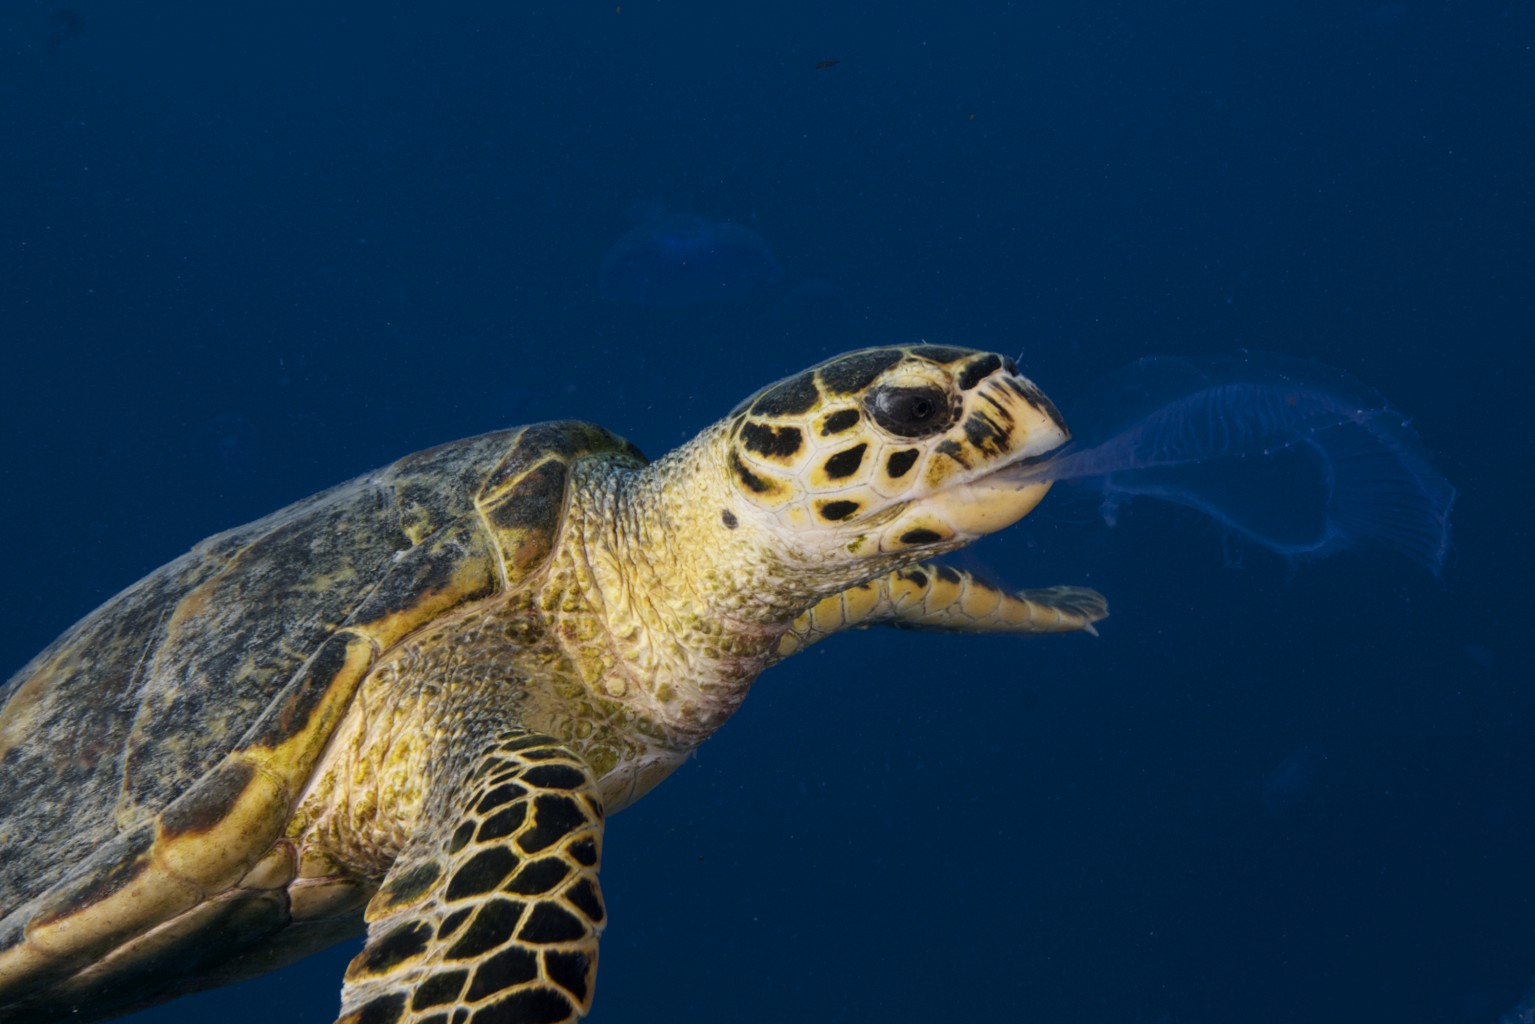 Sea Turtle feeding on Jellyfish, Red Sea - Egypt